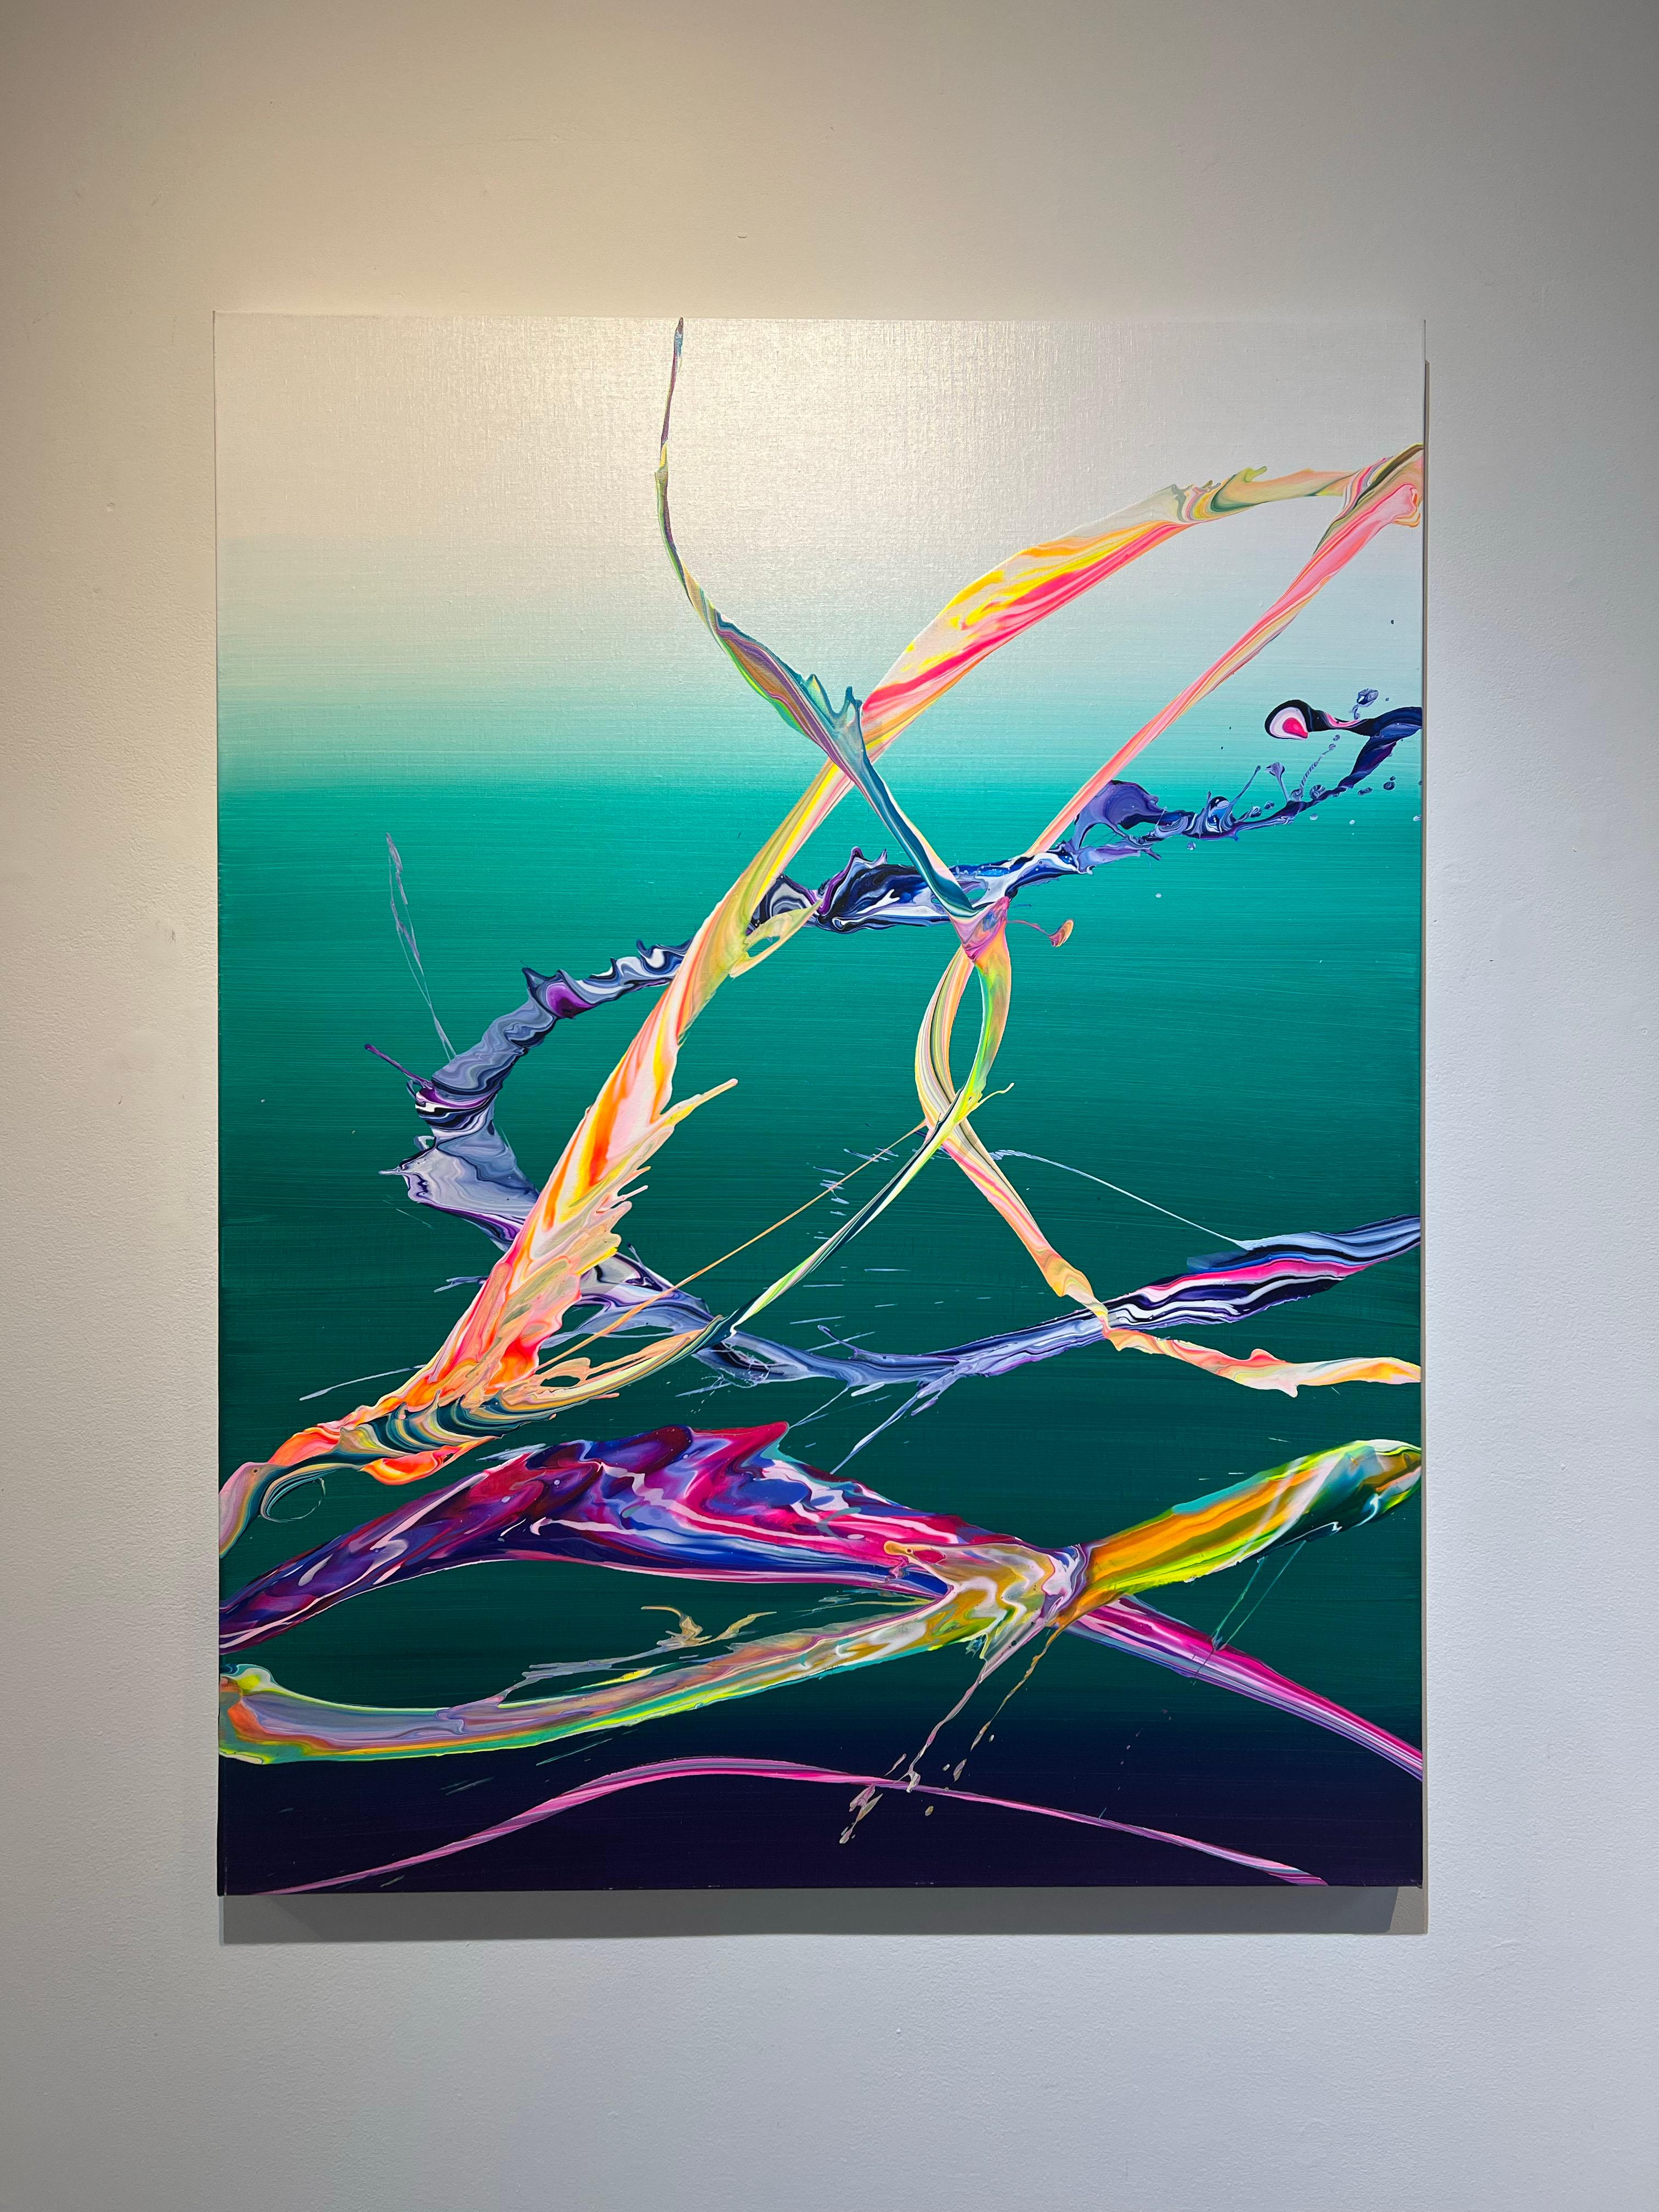 AV 762 - Une abstraction liquide aux couleurs vives sur fond d'ombrage blanc-sarcelle. - Painting de Alex Voinea